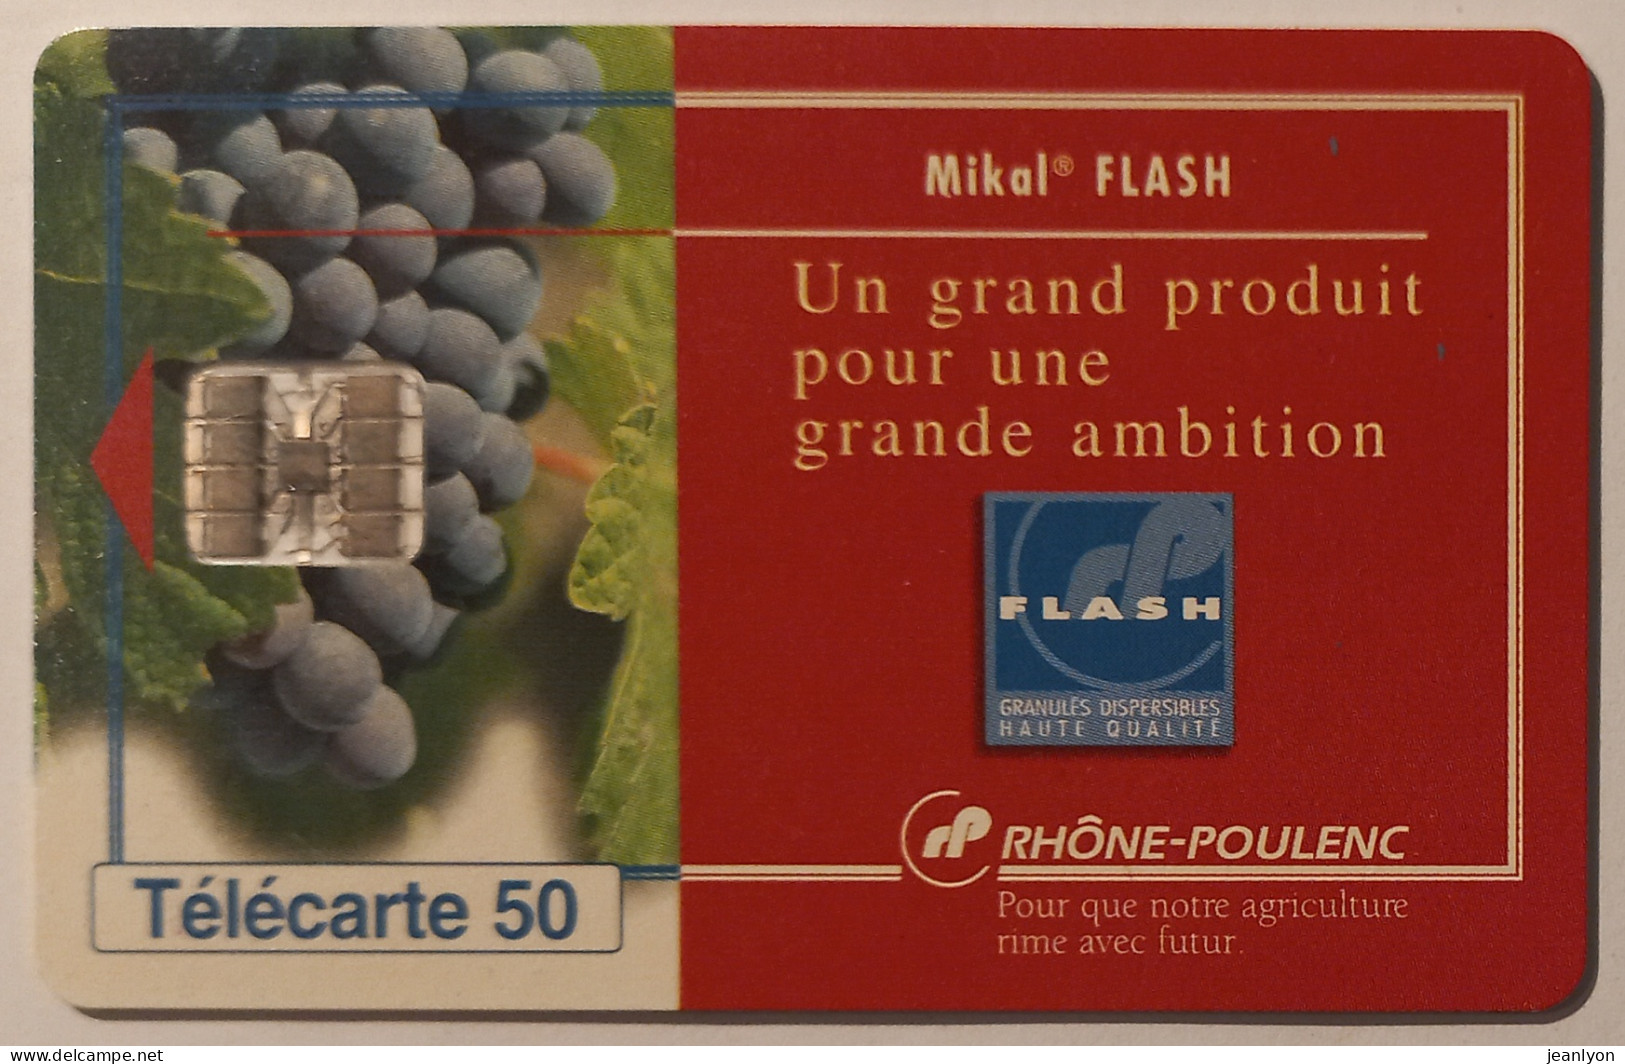 RHONE POULENC - MIKAL FLASH - Raisin / Vigne / Vin - Télécarte 50 Privée Publique - 50 Einheiten